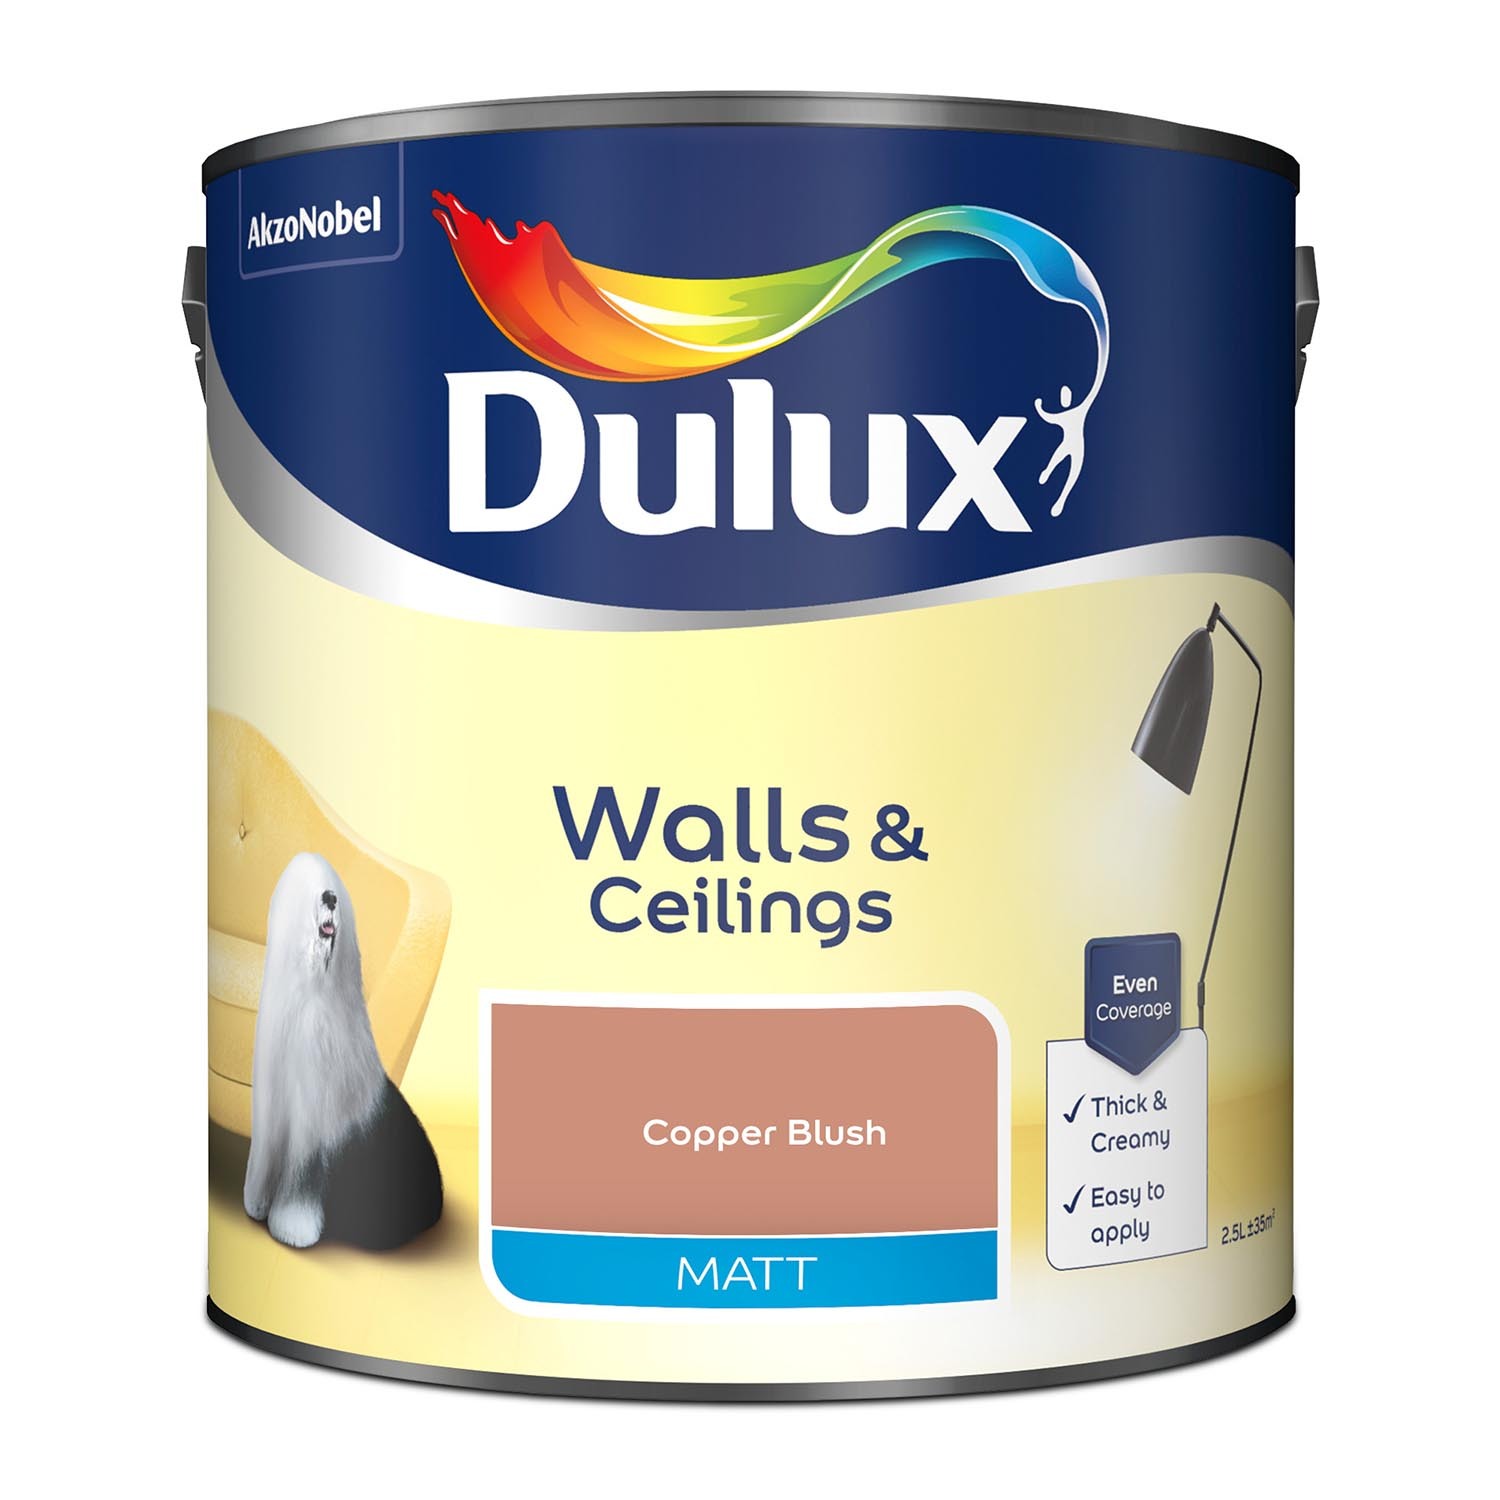 Dulux Walls & Ceilings Copper Blush Matt Emulsion Paint 2.5L Image 2